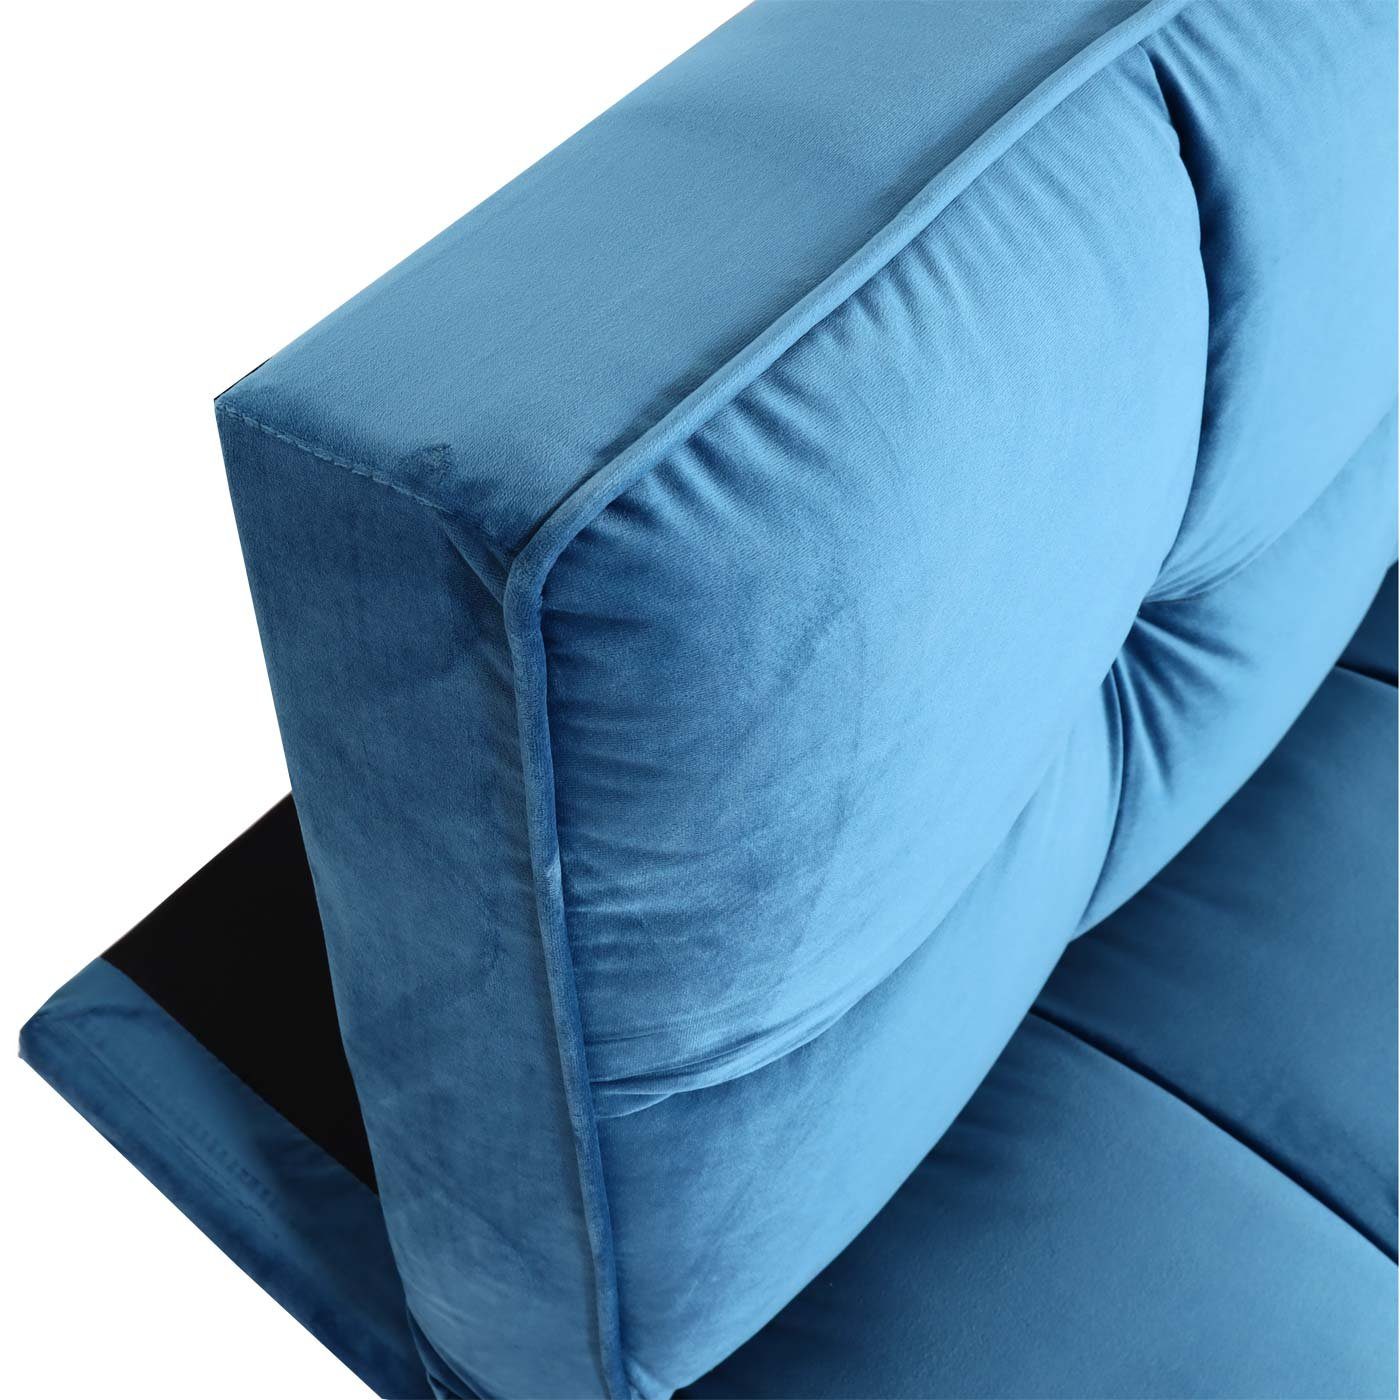 blau Mit blau MCW Sofa Schlaffunktion, verstellbare Rückenlehne, MCW-K21, Nosagfederung |